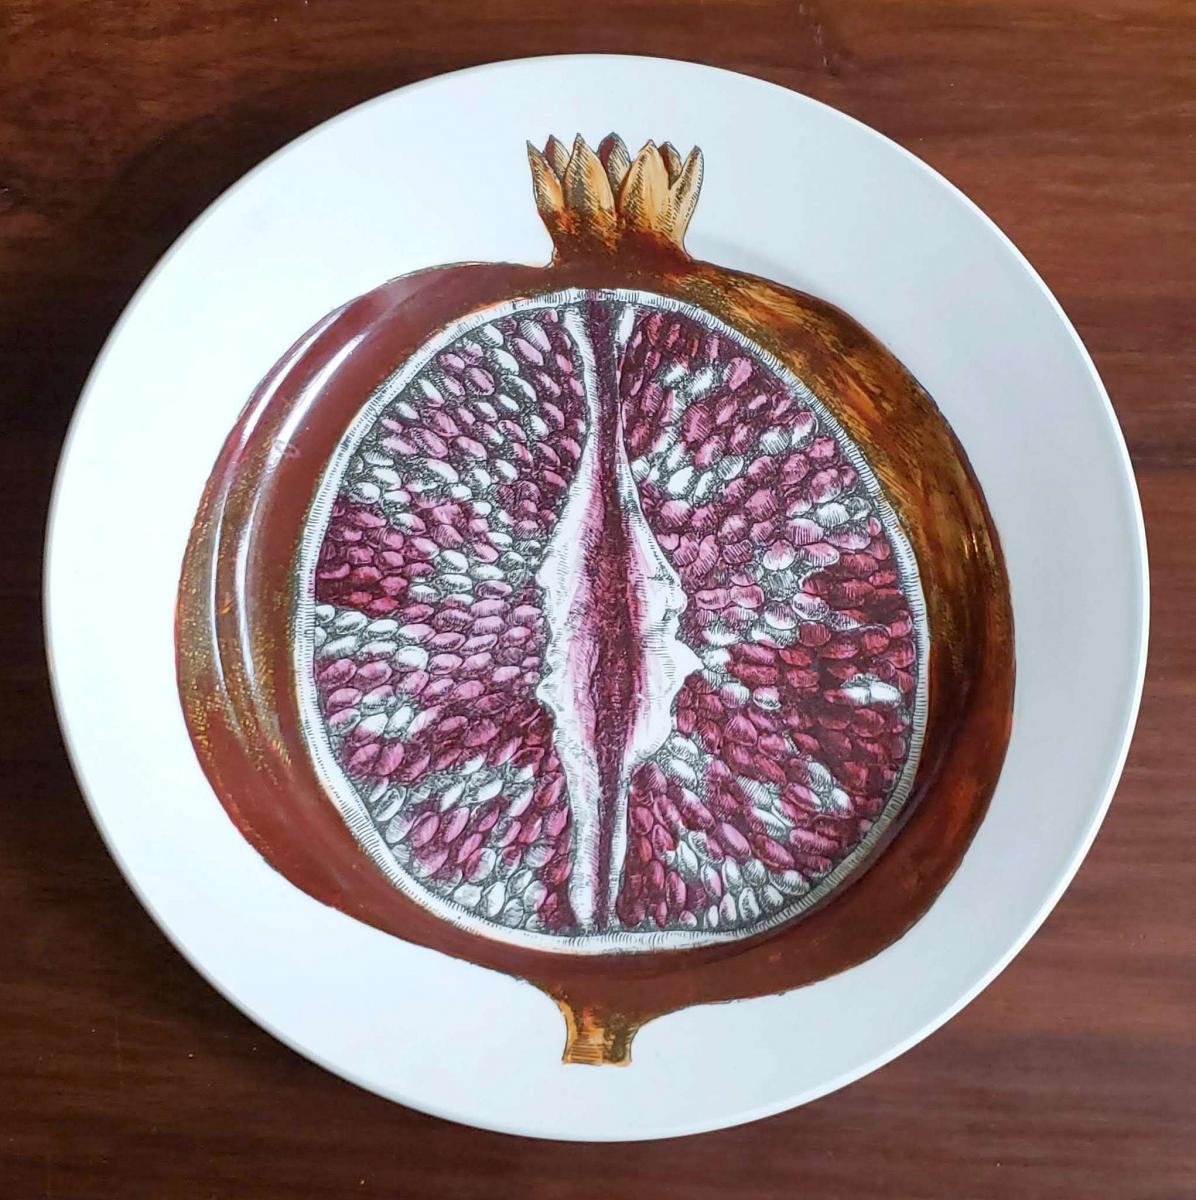 Piero Fornasetti Cut Fruit Pottery Plate, Sezioni Di Frutta Series, The Pomegranate, Dated 1953